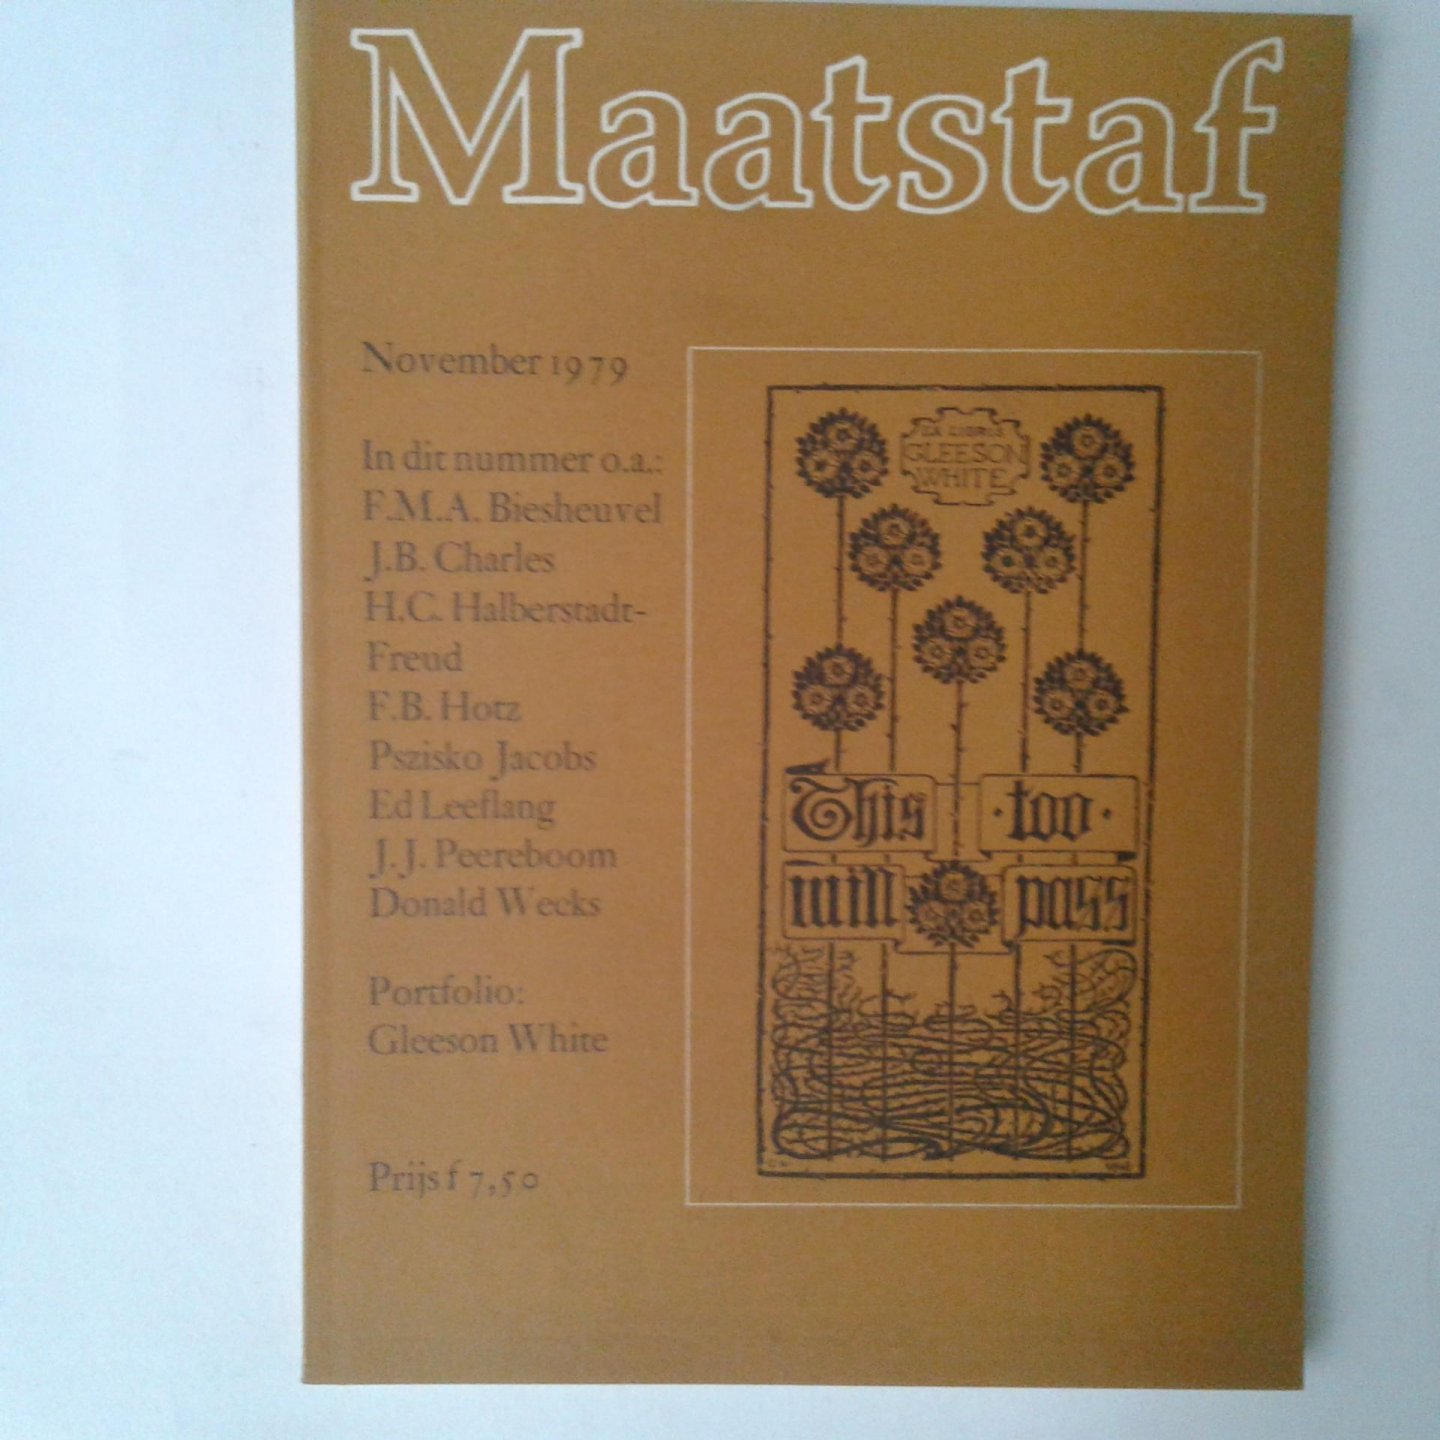 Maatstaf - Maatstaf, November 1979